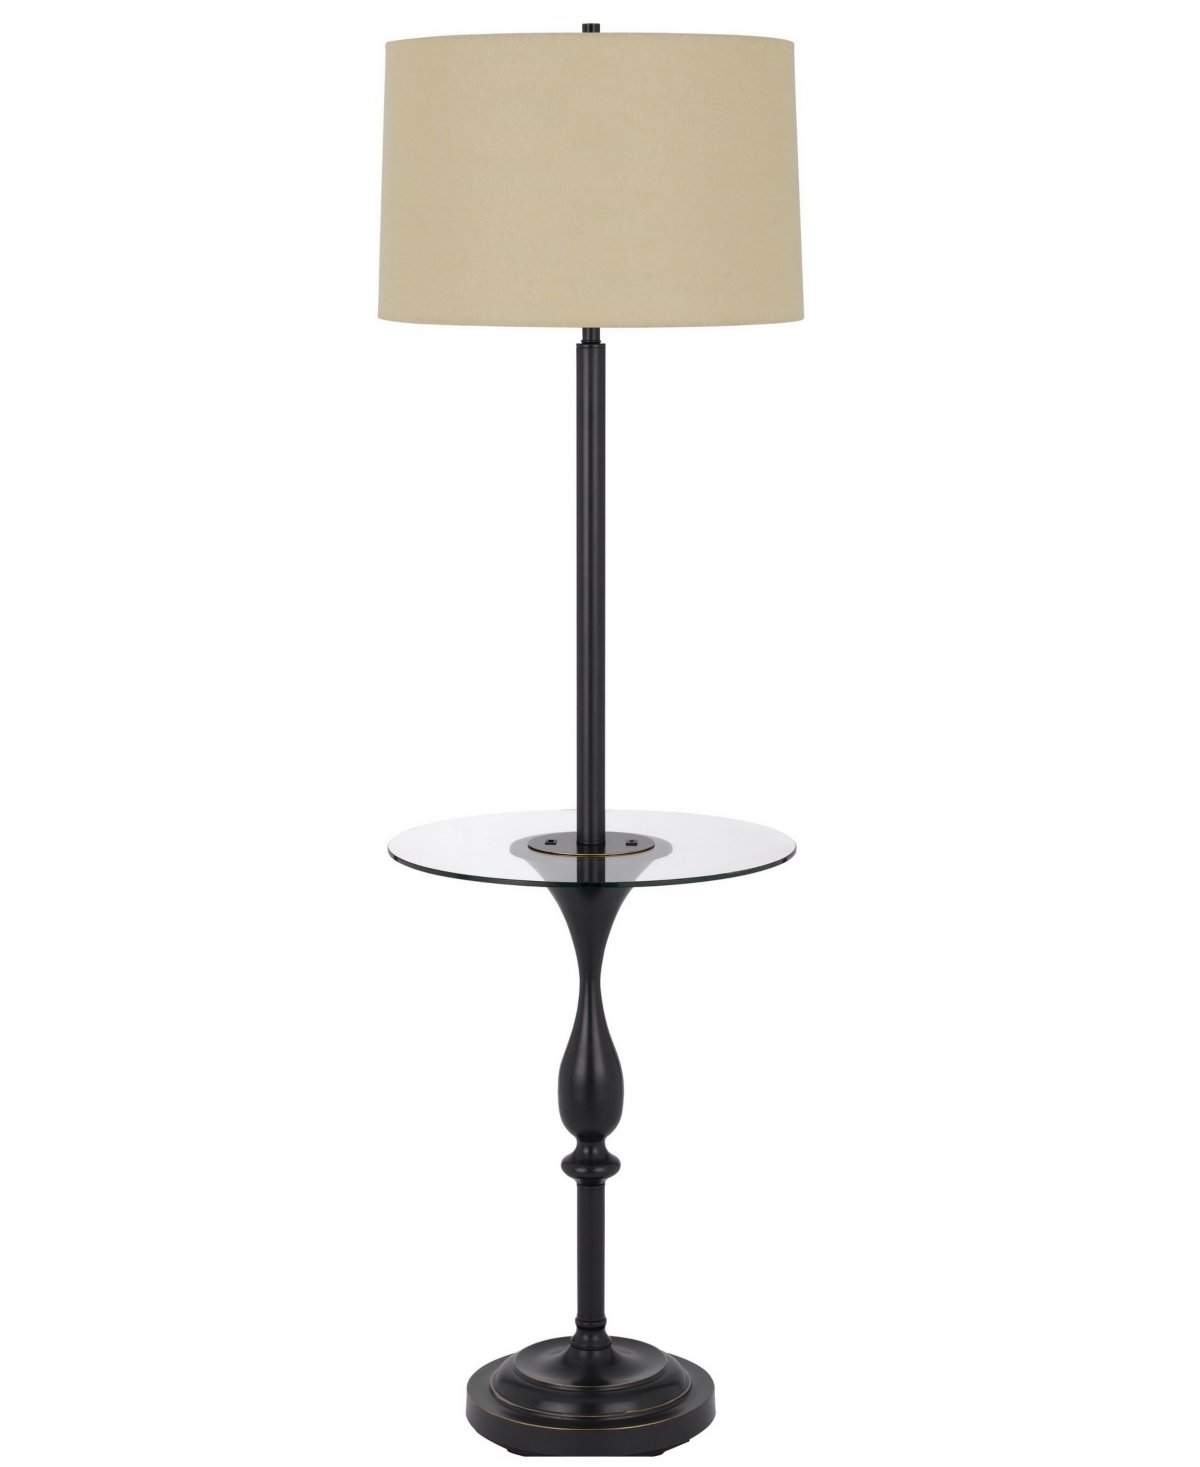 Cal Lighting 61" Height Metal Floor Lamp In Dark Bronze